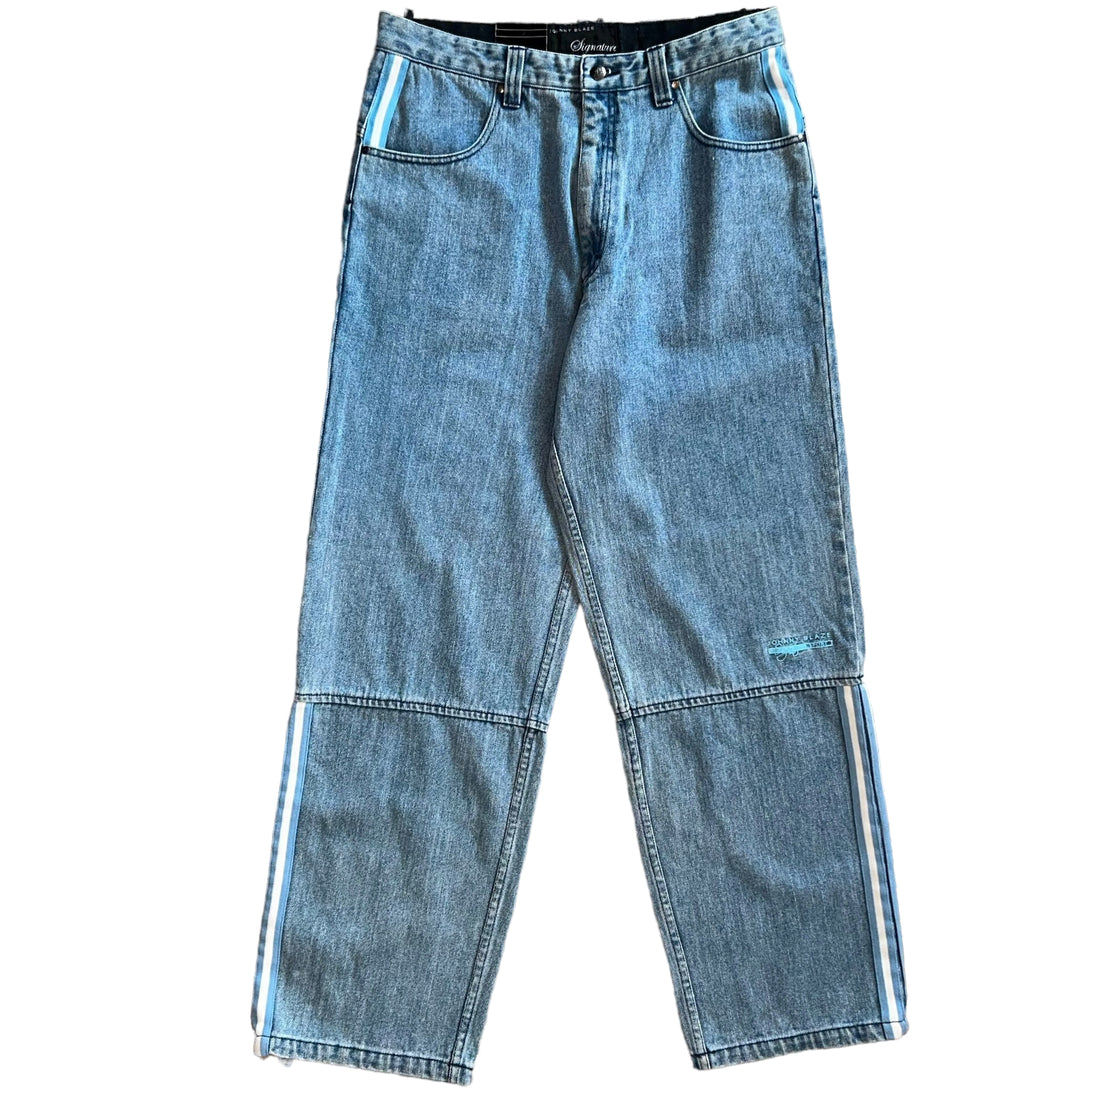 Baggy Jeans Johnny Blaze (36 US XL)